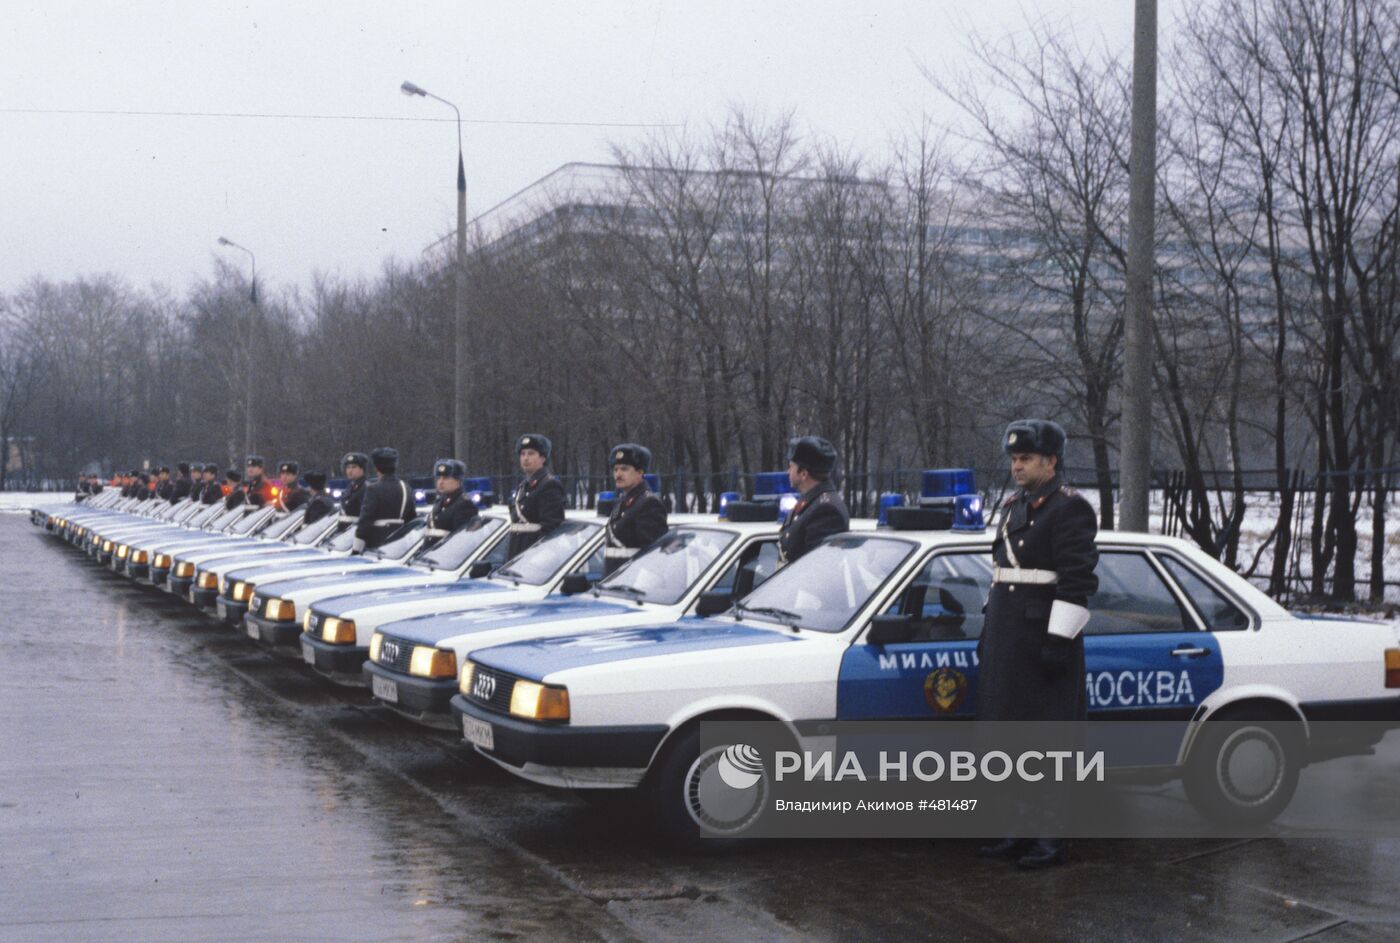 Автомобили Ауди-80 в подарок московской госавтоинспекции